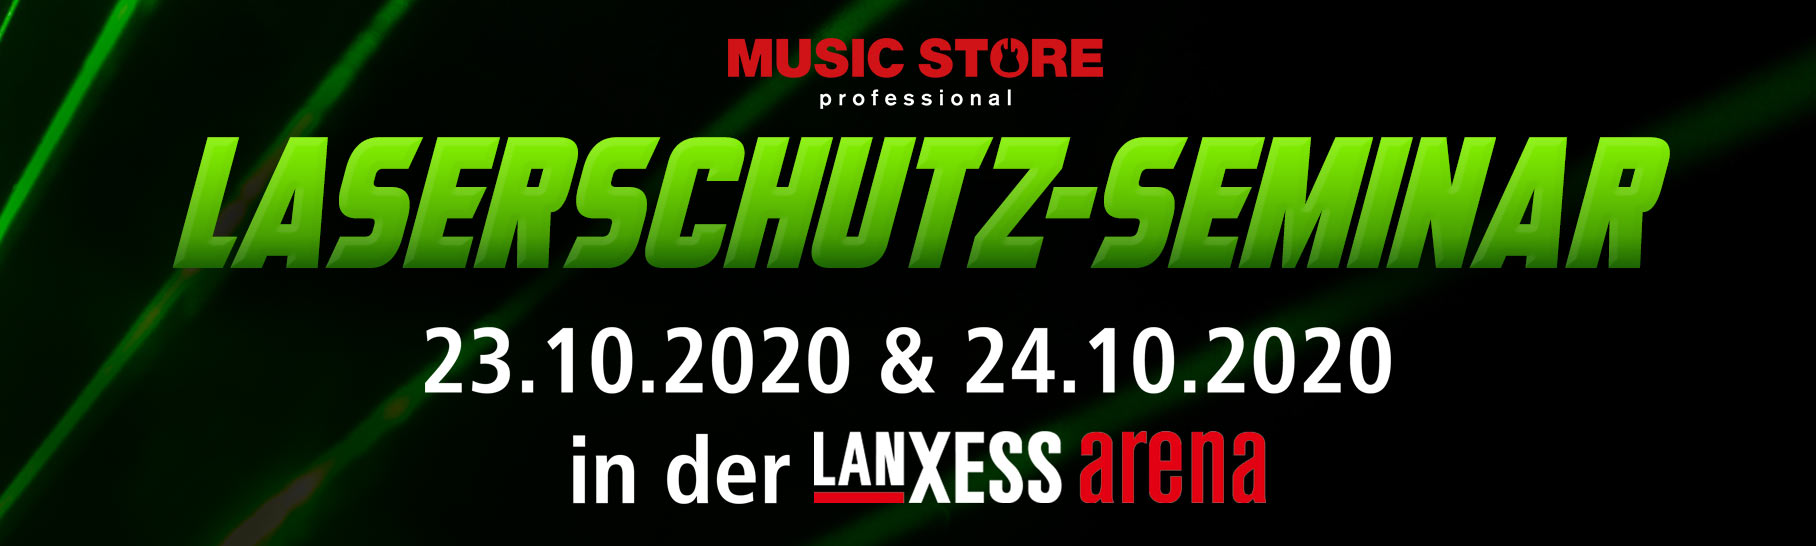 Music Store Professional Koln Adresse